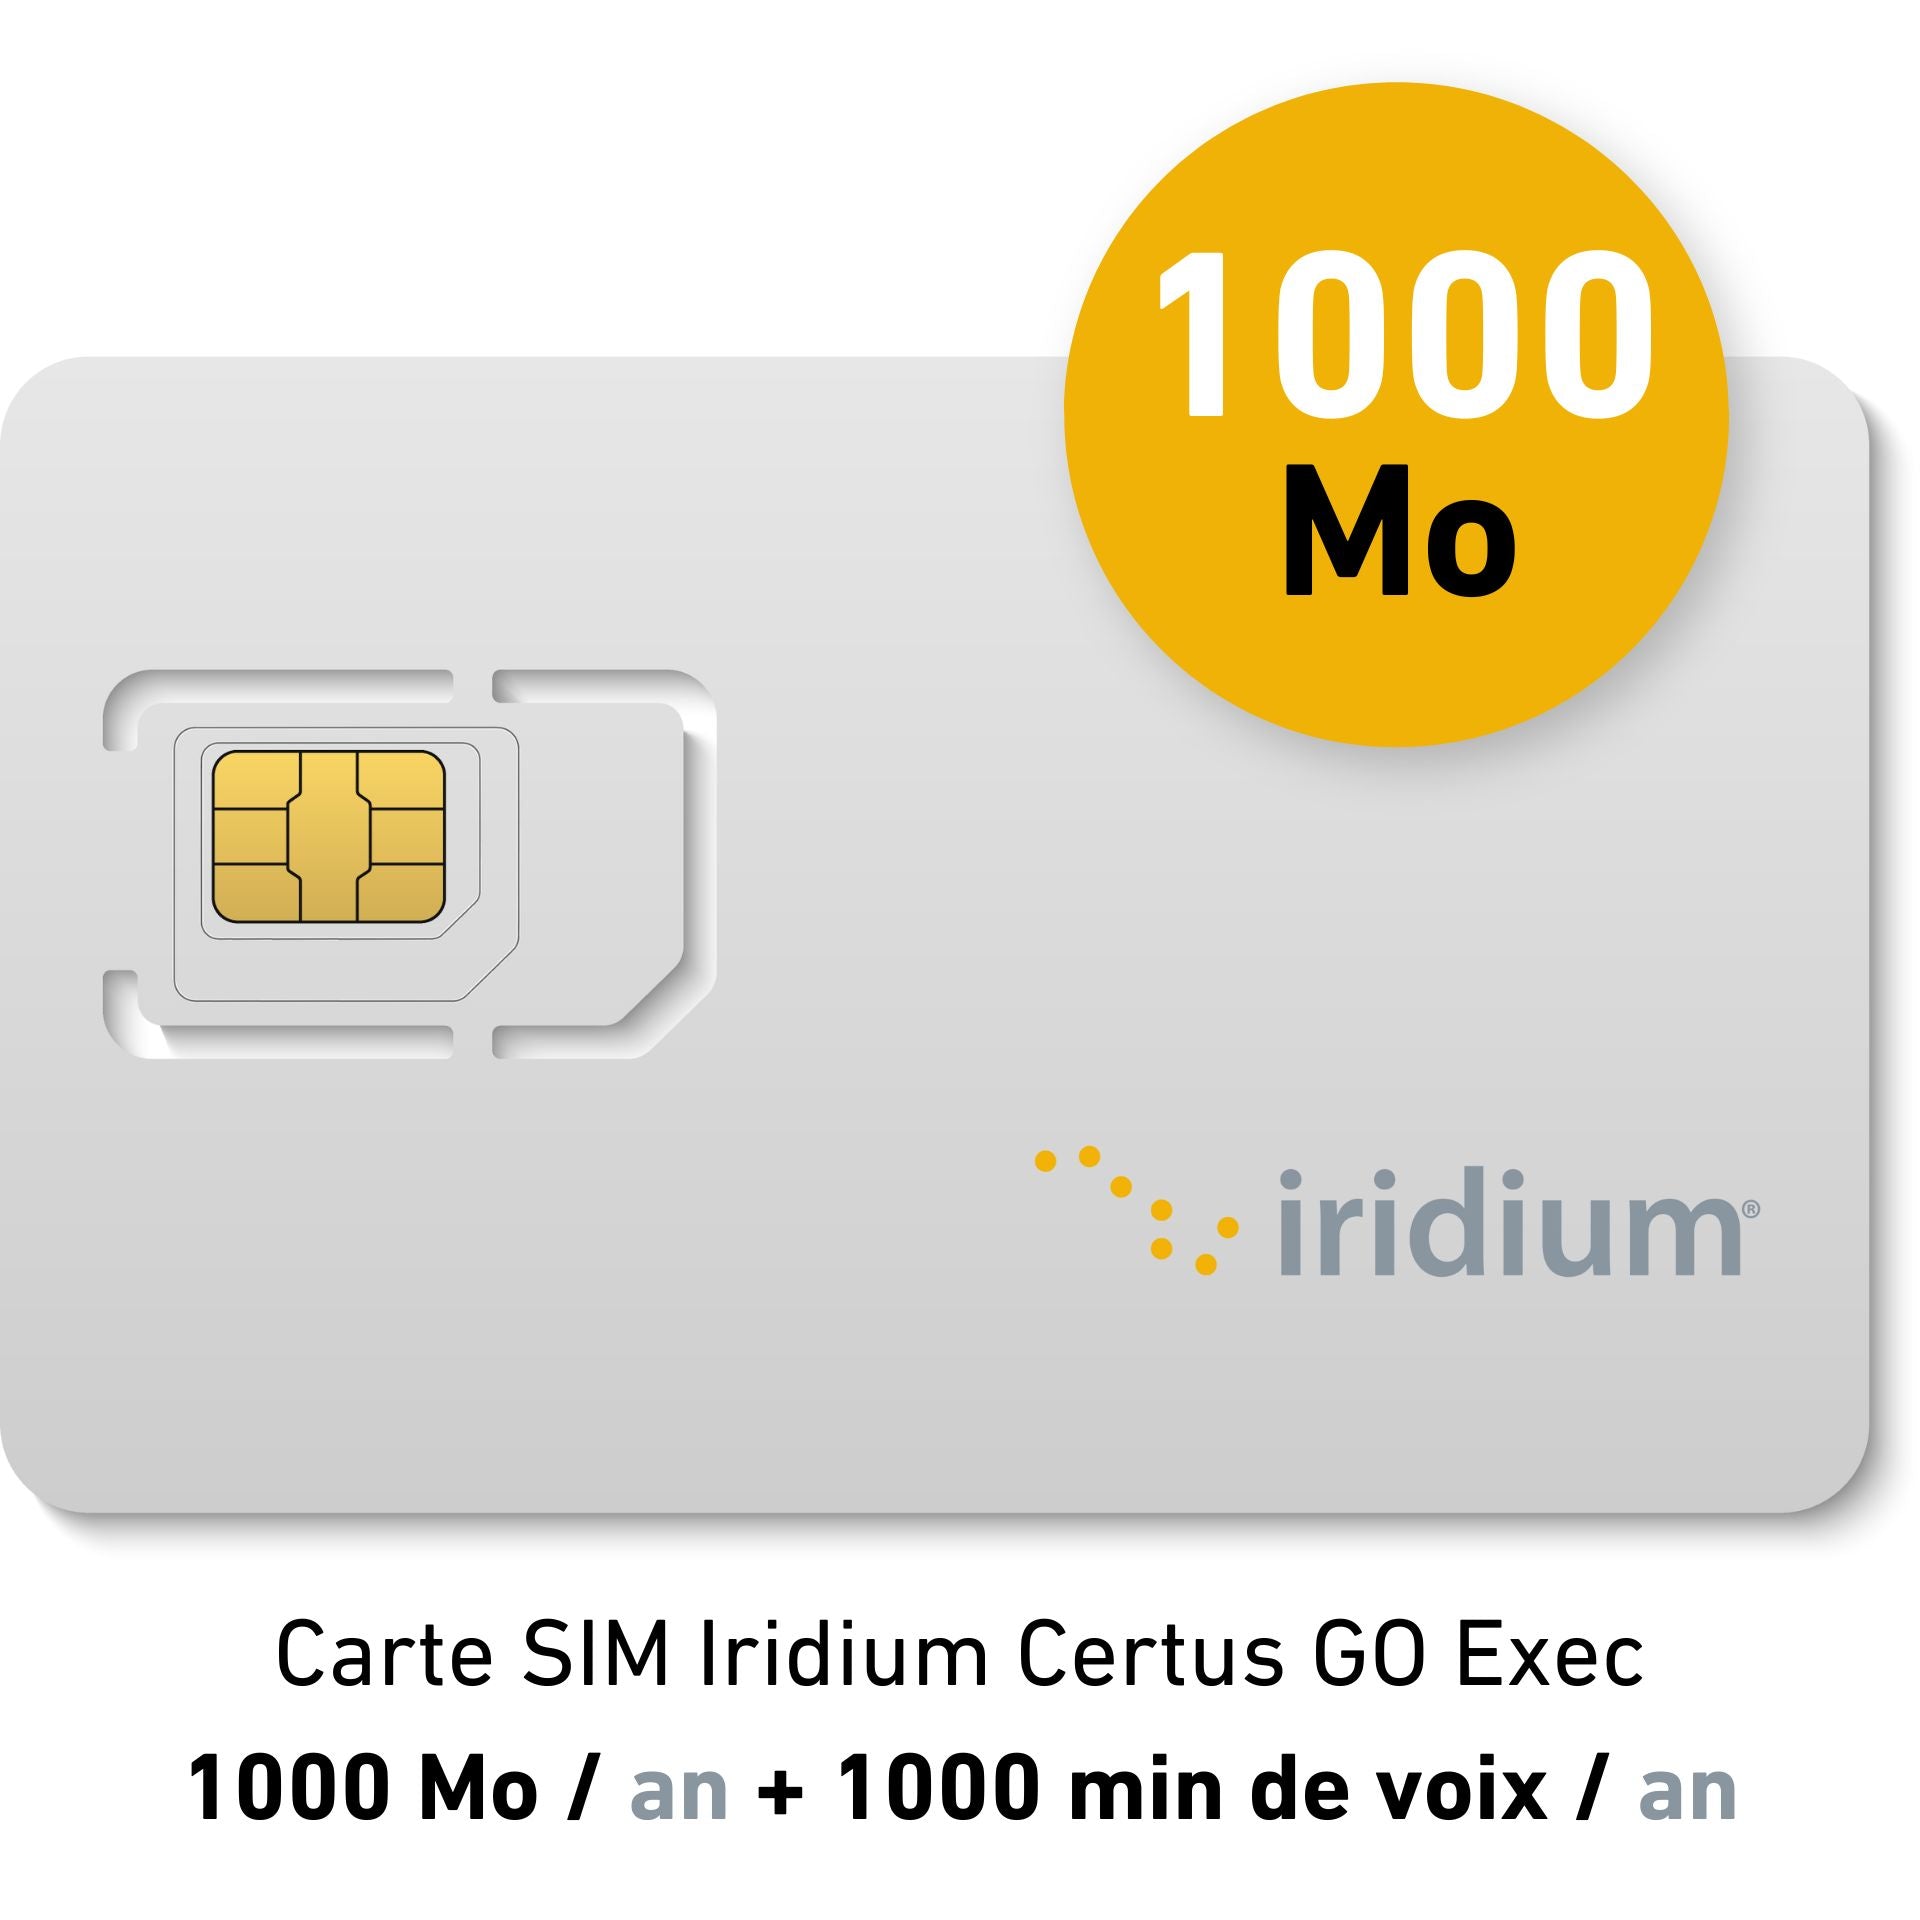 Iridium Certus GO Exec Suscripción Anual Yachting - 1000MB/año + 1000 min voz/año